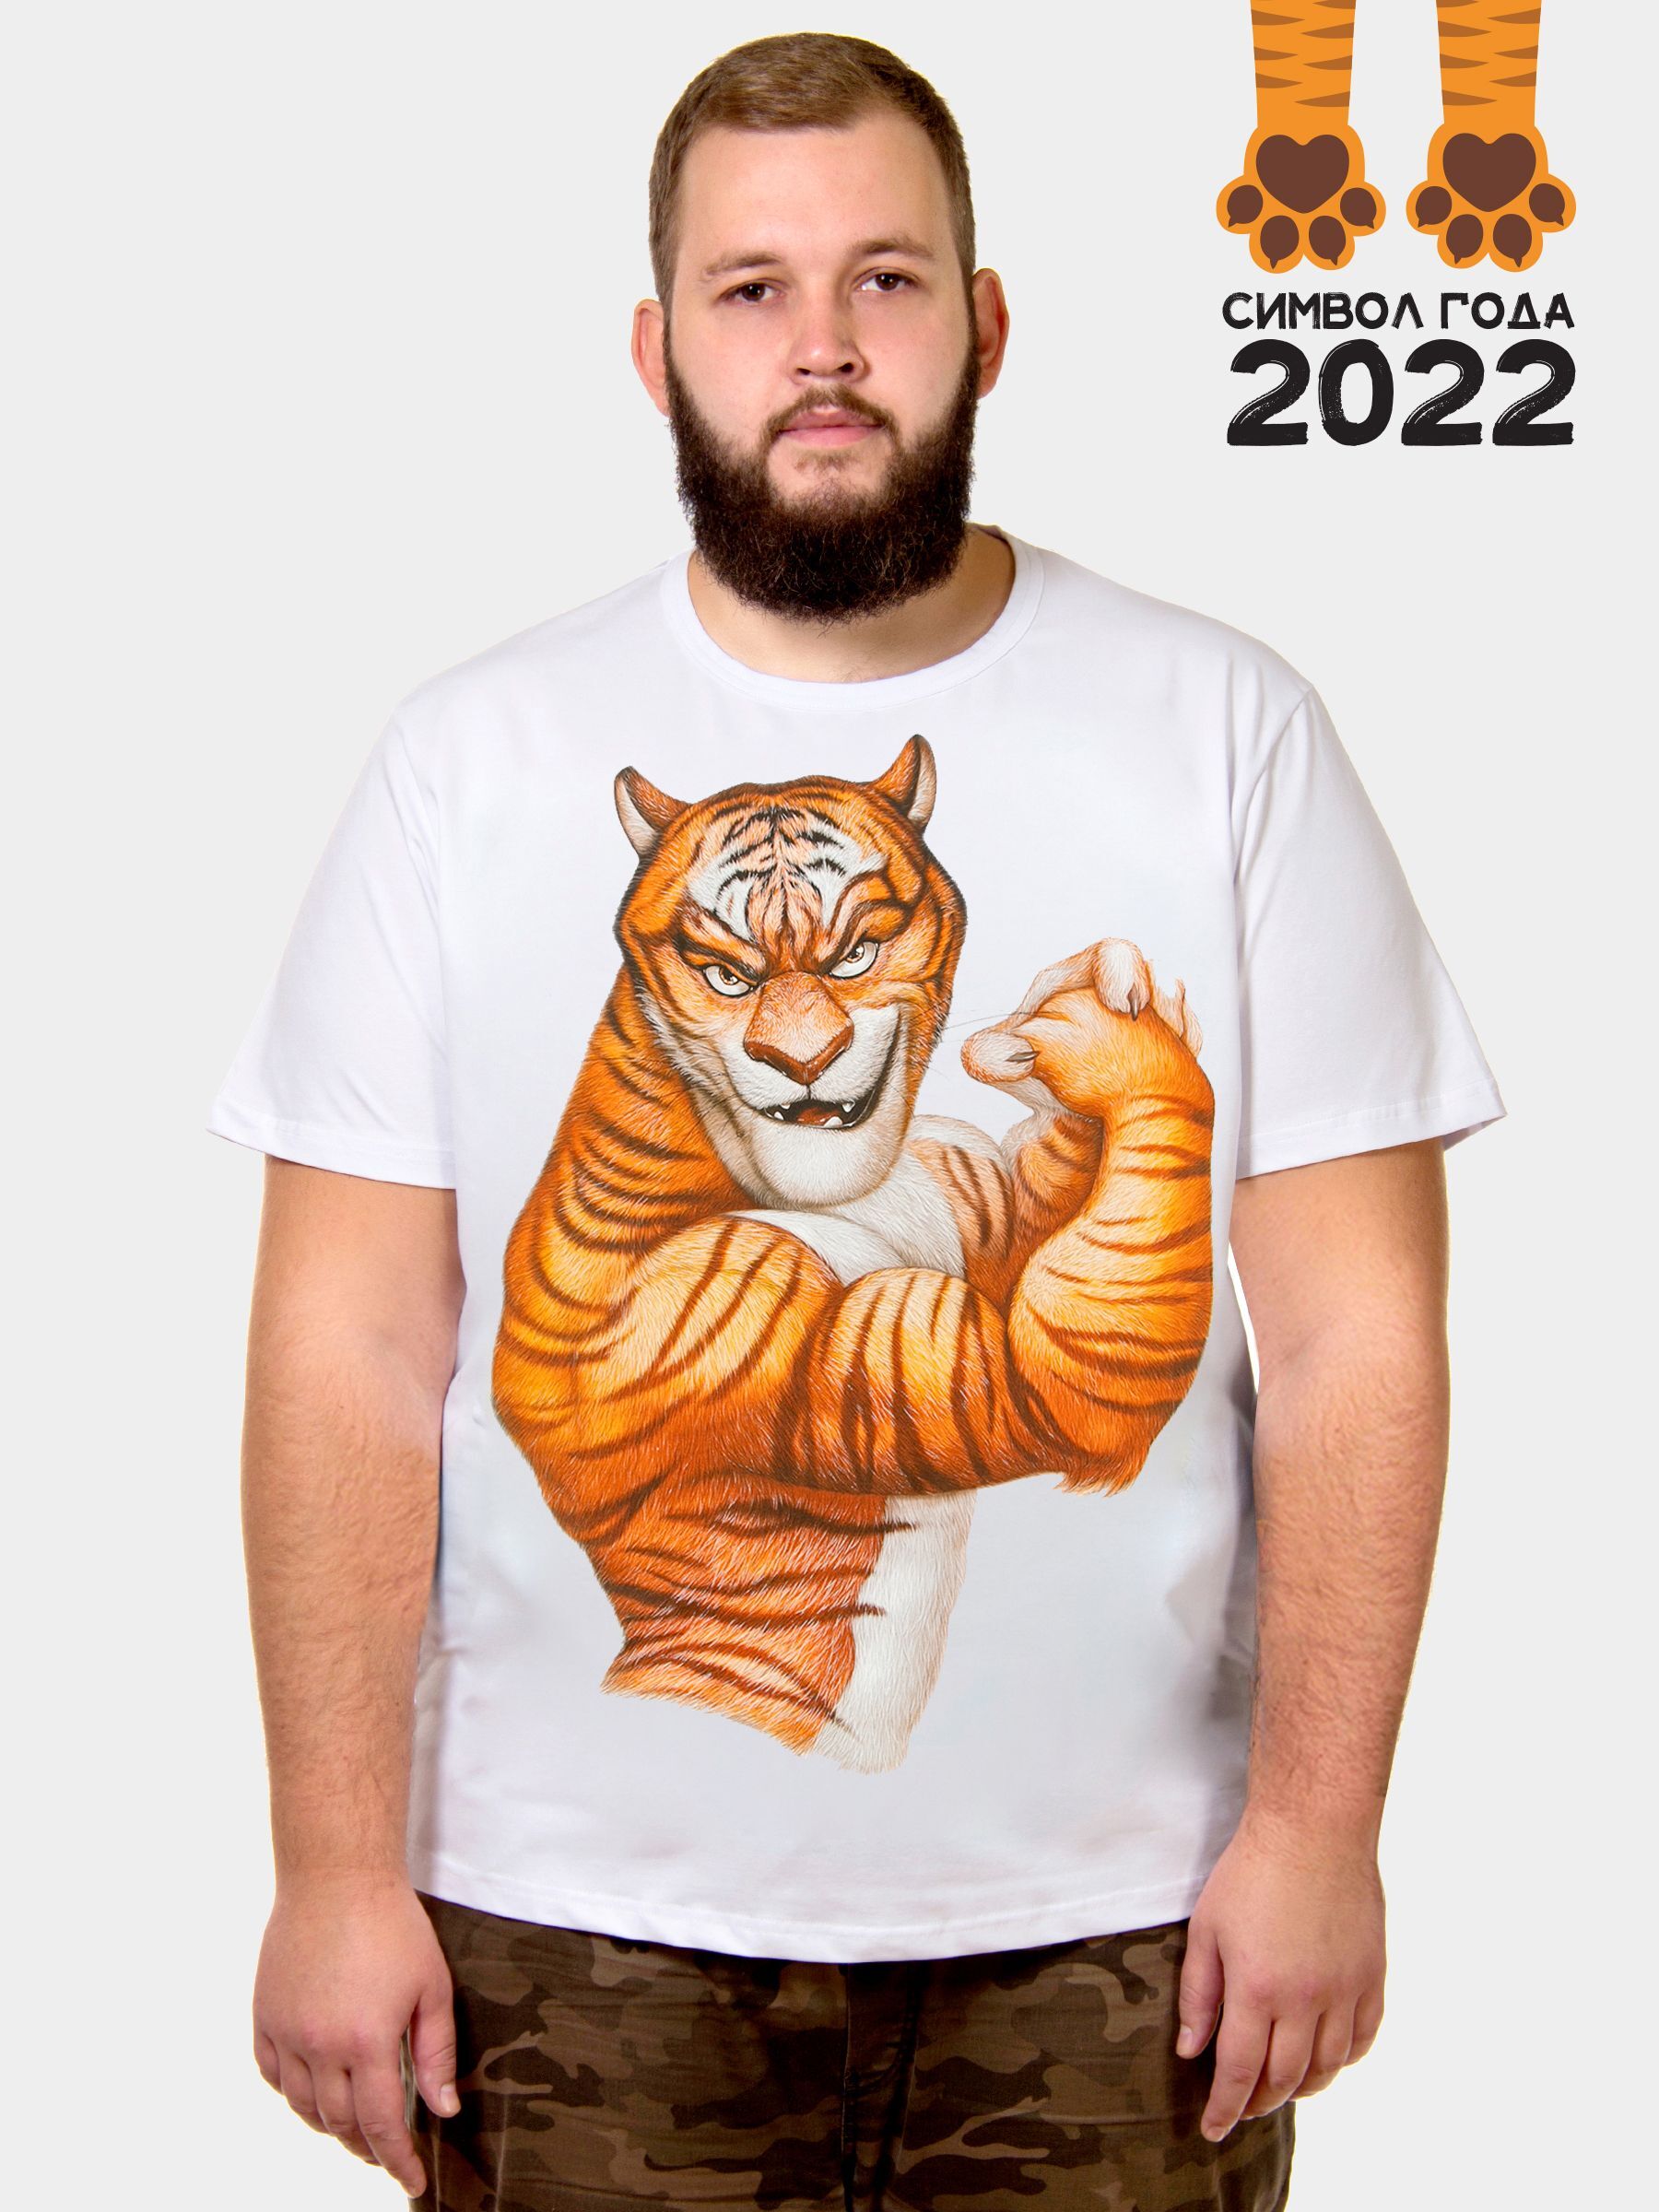 Тигр качок. Футболка с тигром. Майка с тигром. Мужик в футболке с тигром.